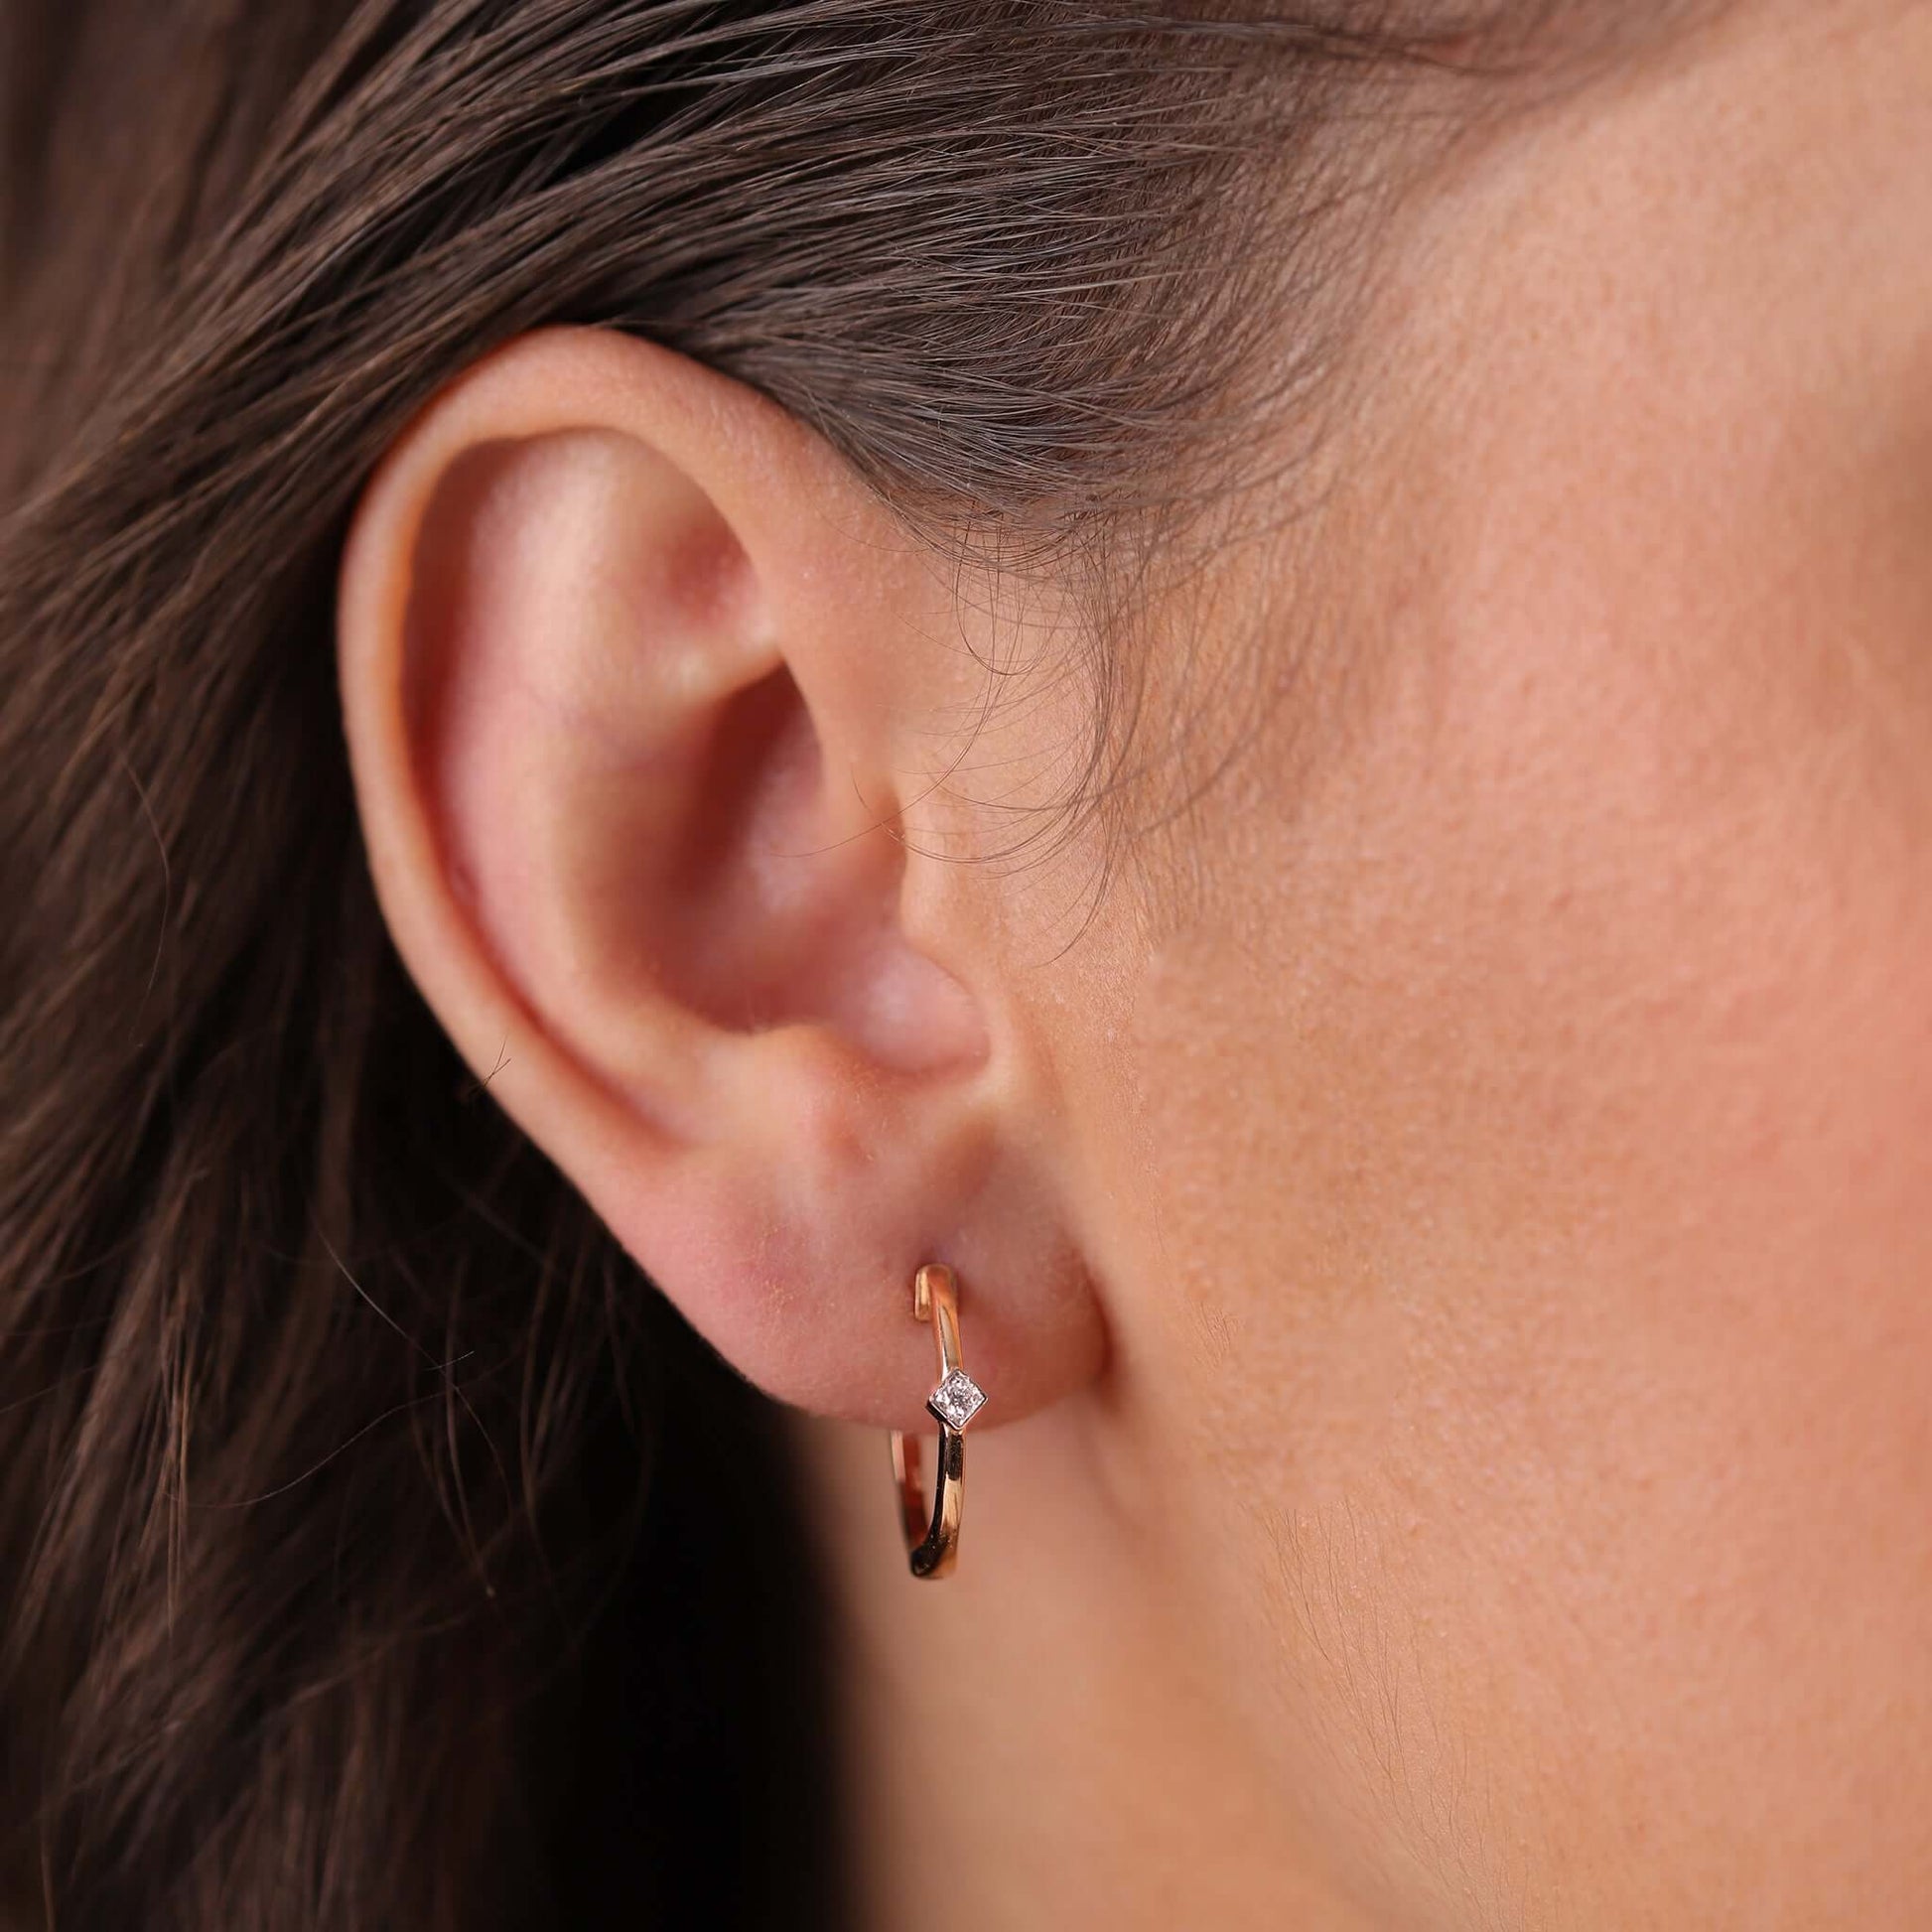 Jewelry Minnies Hoops | Single Diamond Earrings | 0.04 Cts. | 14K Gold - earring Zengoda Shop online from Artisan